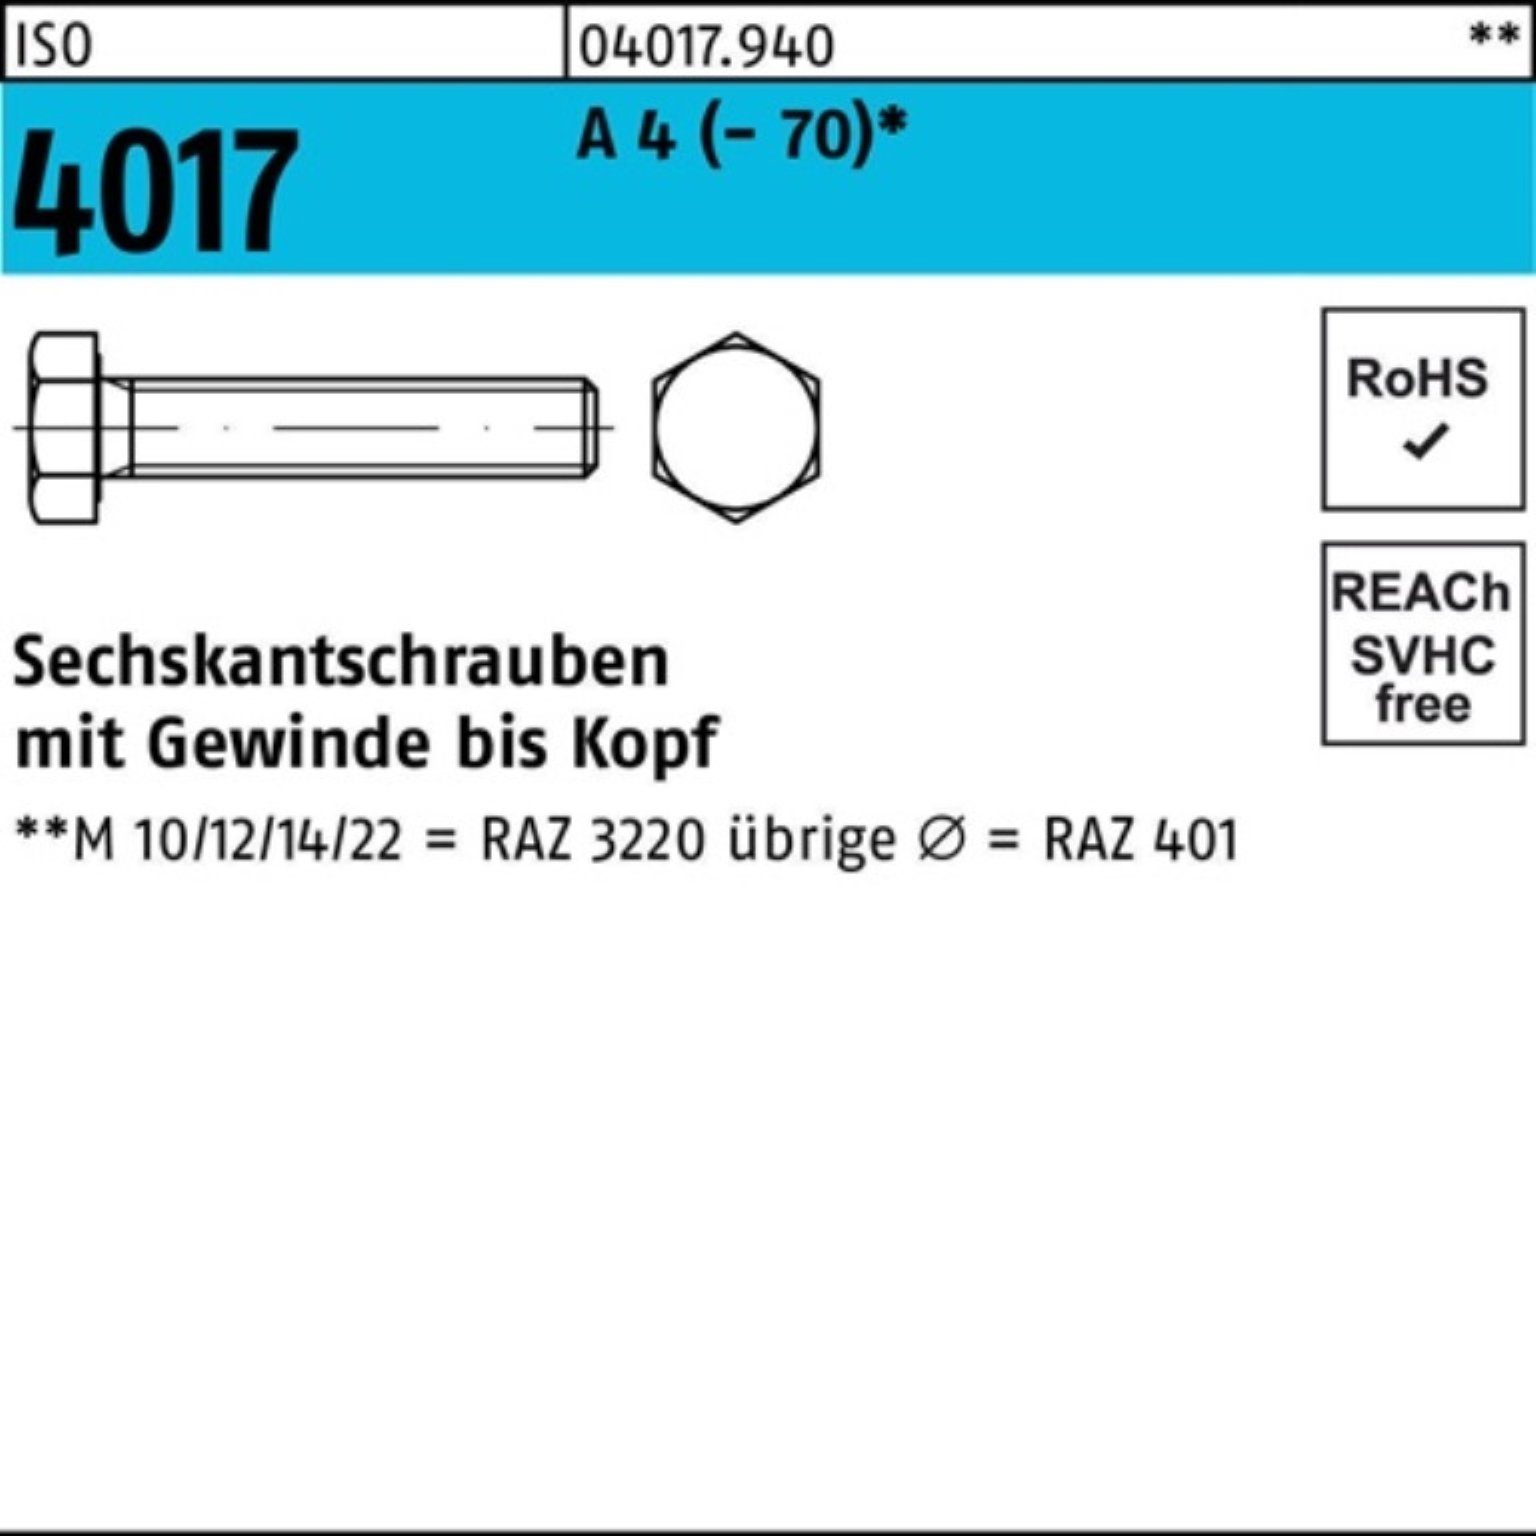 Bufab Sechskantschraube 100er Pack Sechskantschraube 4017 M16x 4 ISO VG 90 25 (70) Stück A